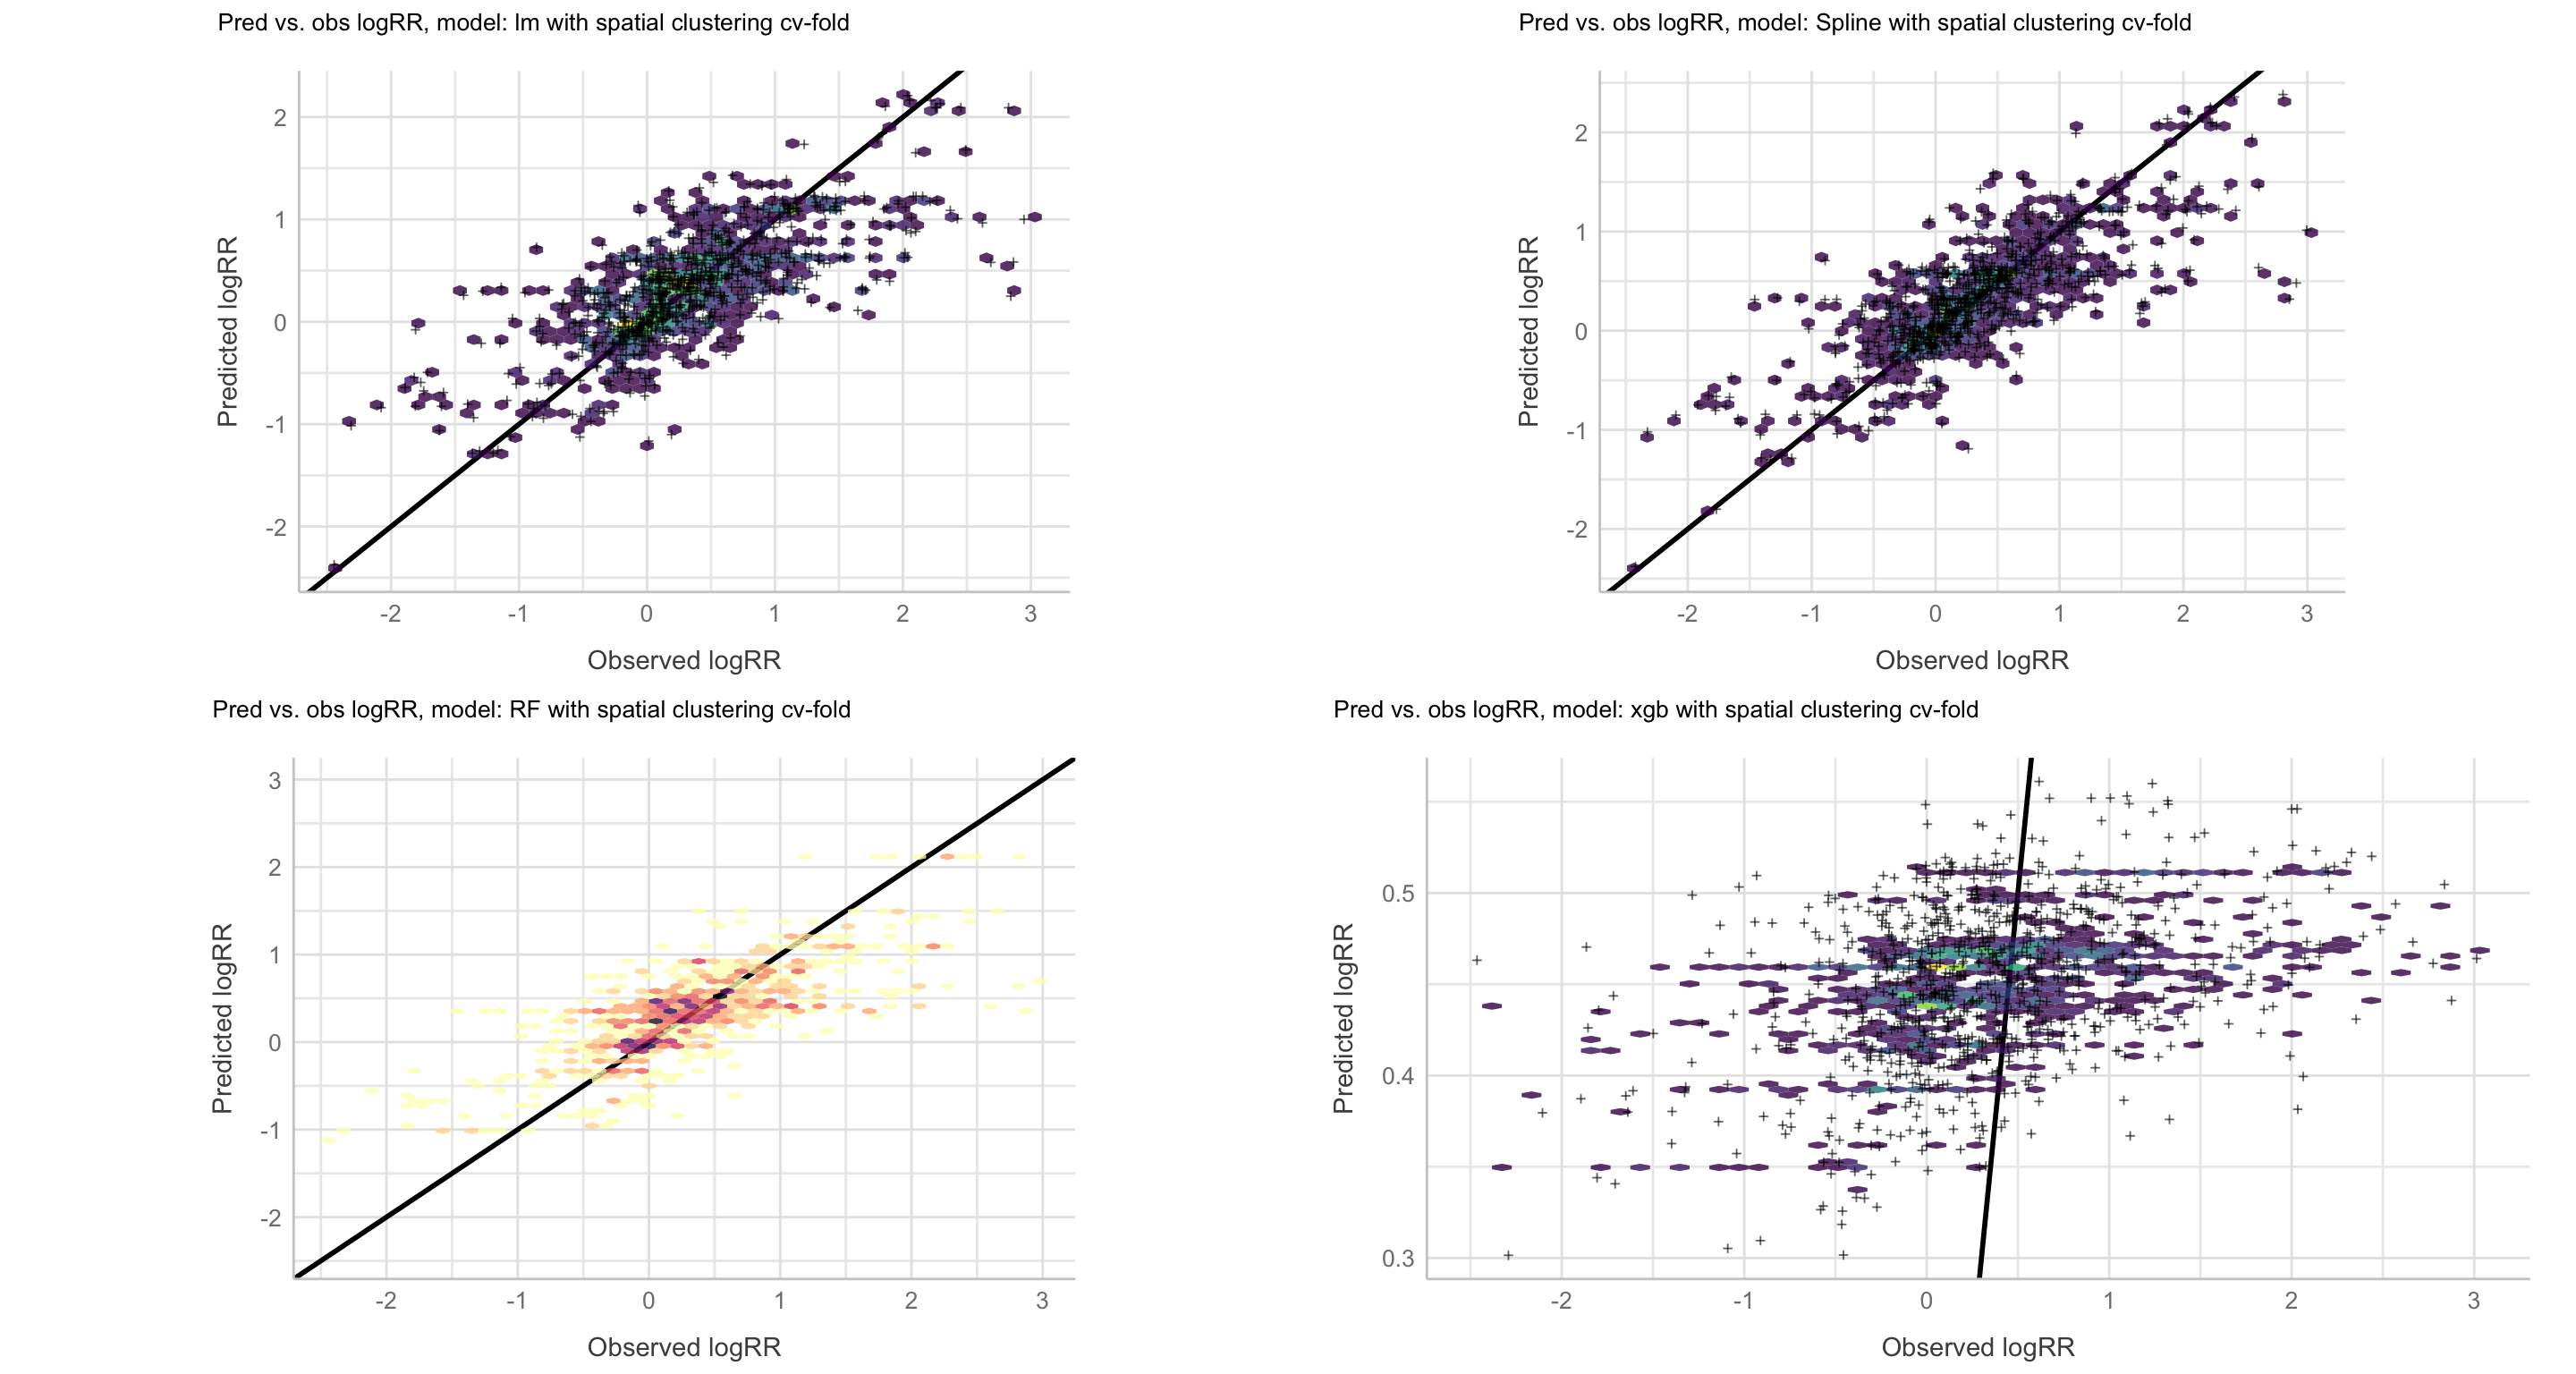 Predicted vs. observed logRR values, resampling: Spatial clustering cv-folds